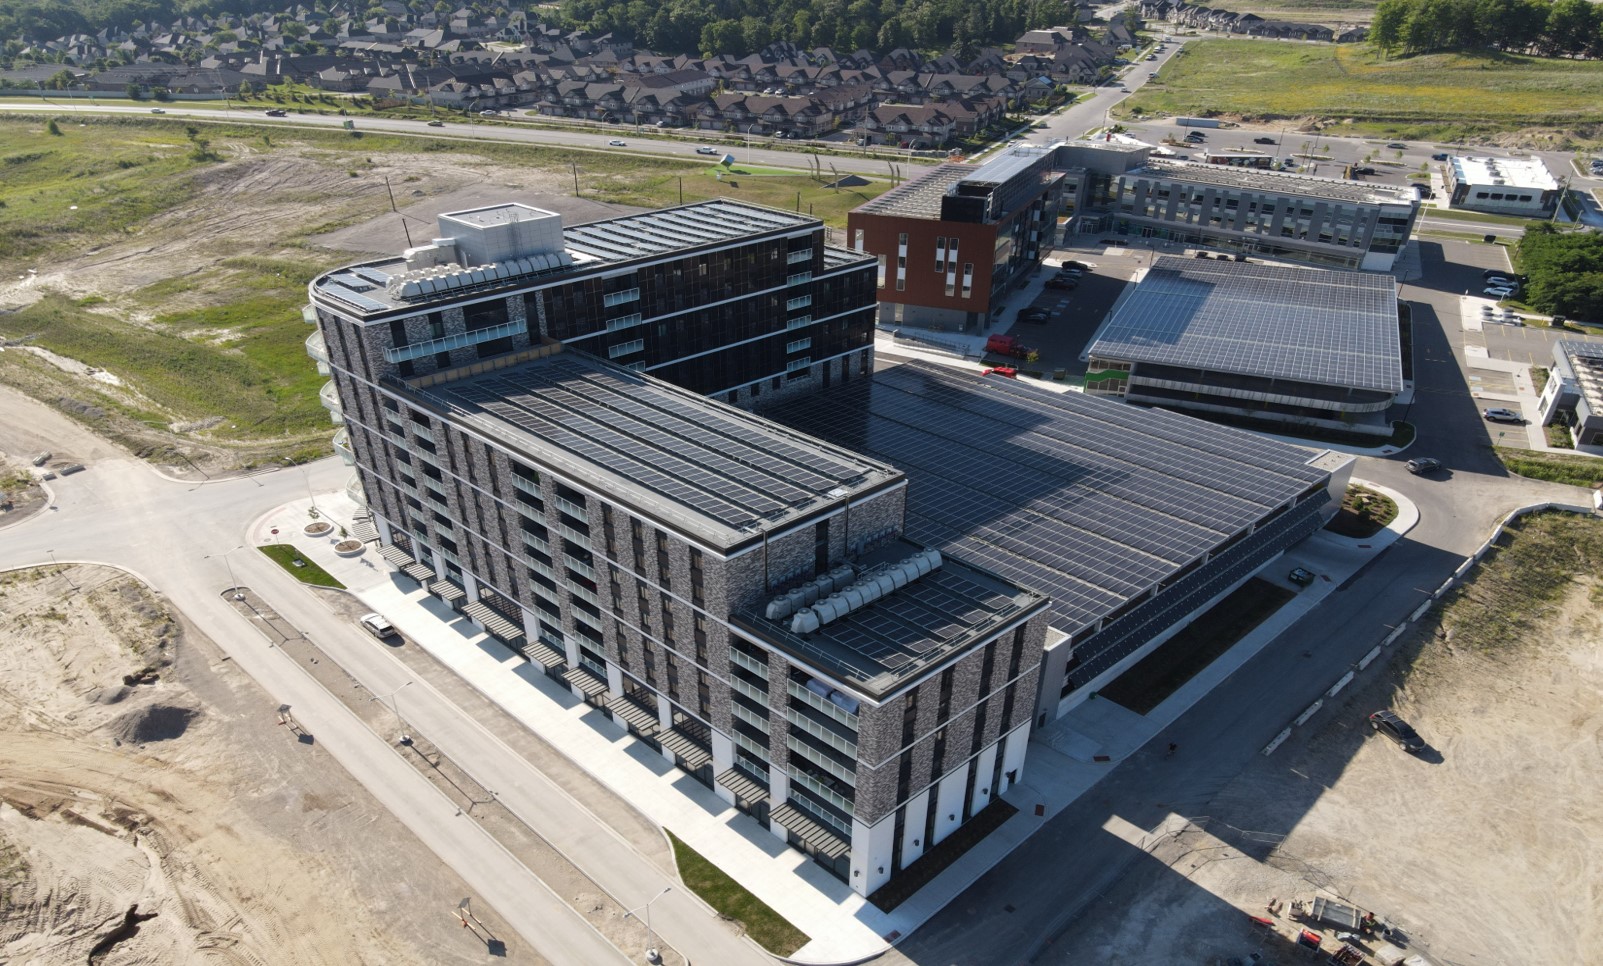 Photographie aérienne des édifices Legacy Square Plaza et Helio Commercial Retail Services, sur le toit desquels sont installés des panneaux solaires photovoltaïques.